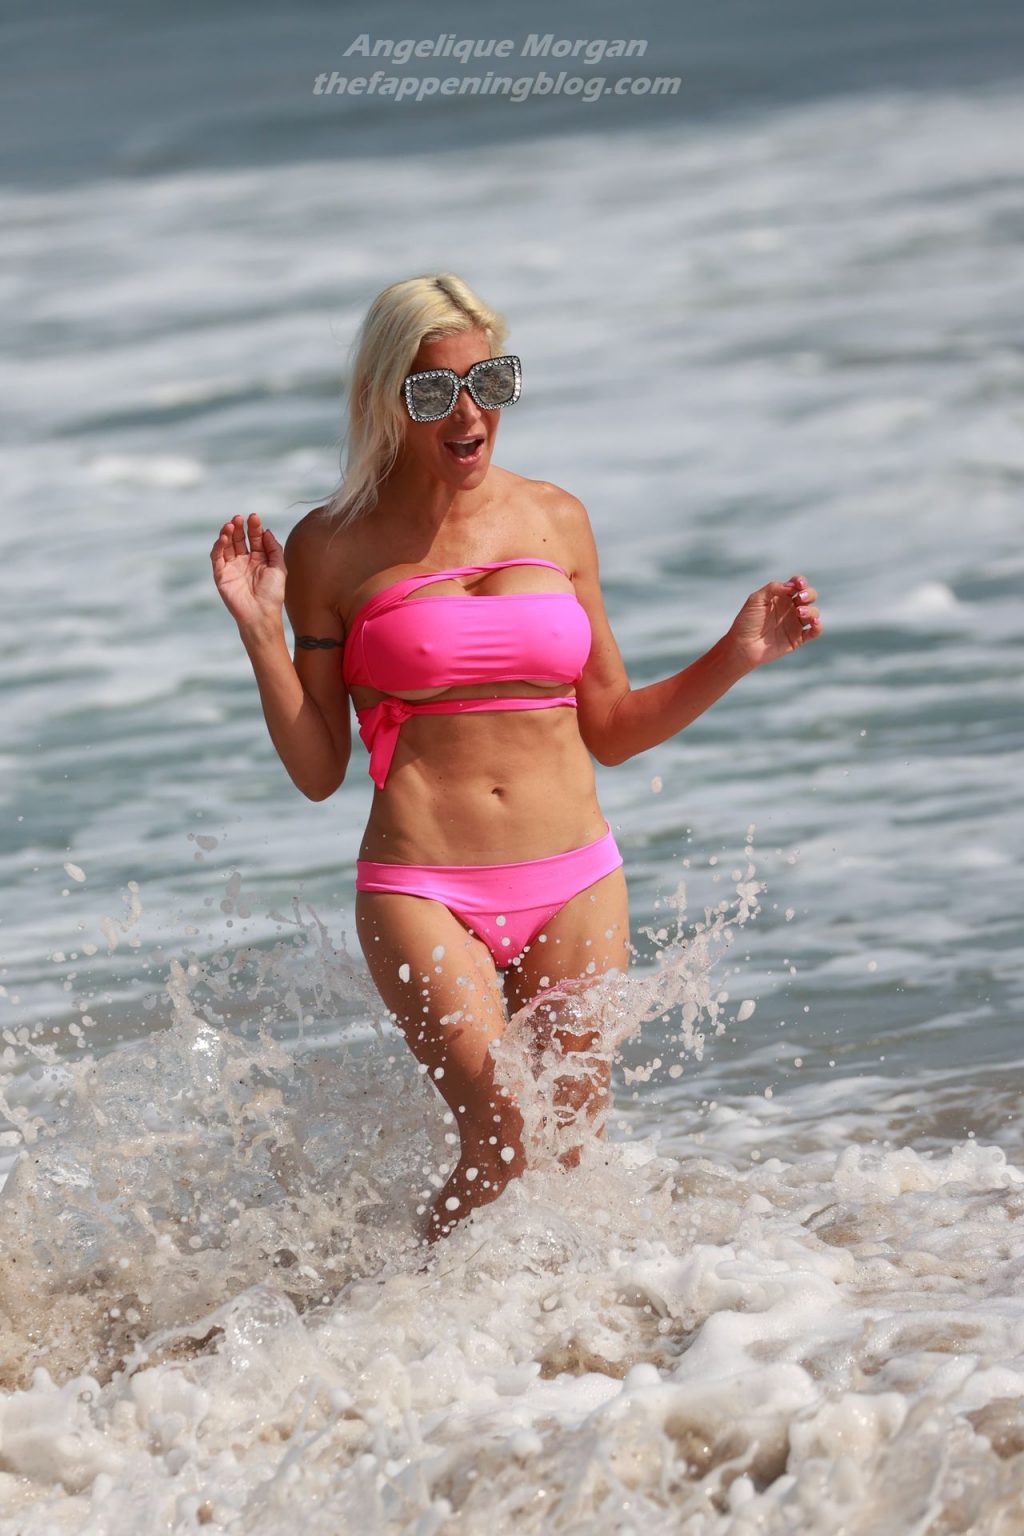 Angelique Morgan Enjoys a Day on the Beach in a Pink Bikini (14 Photos)